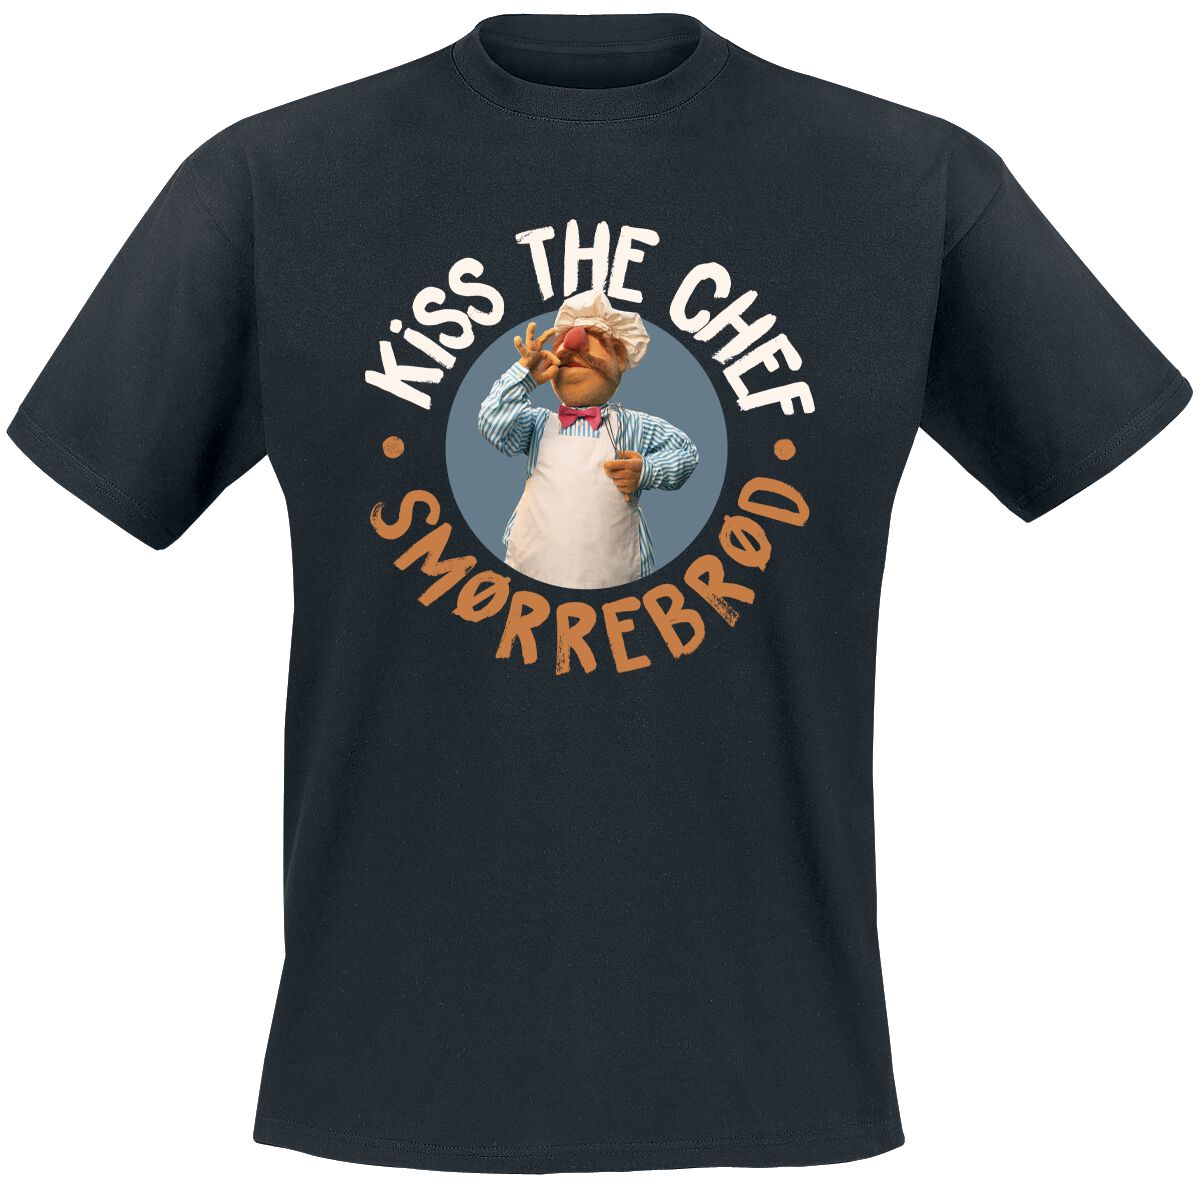 Die Muppets T-Shirt - Kiss The Chef - Smorrebrod - M bis 5XL - für Männer - Größe L - schwarz  - Lizenzierter Fanartikel